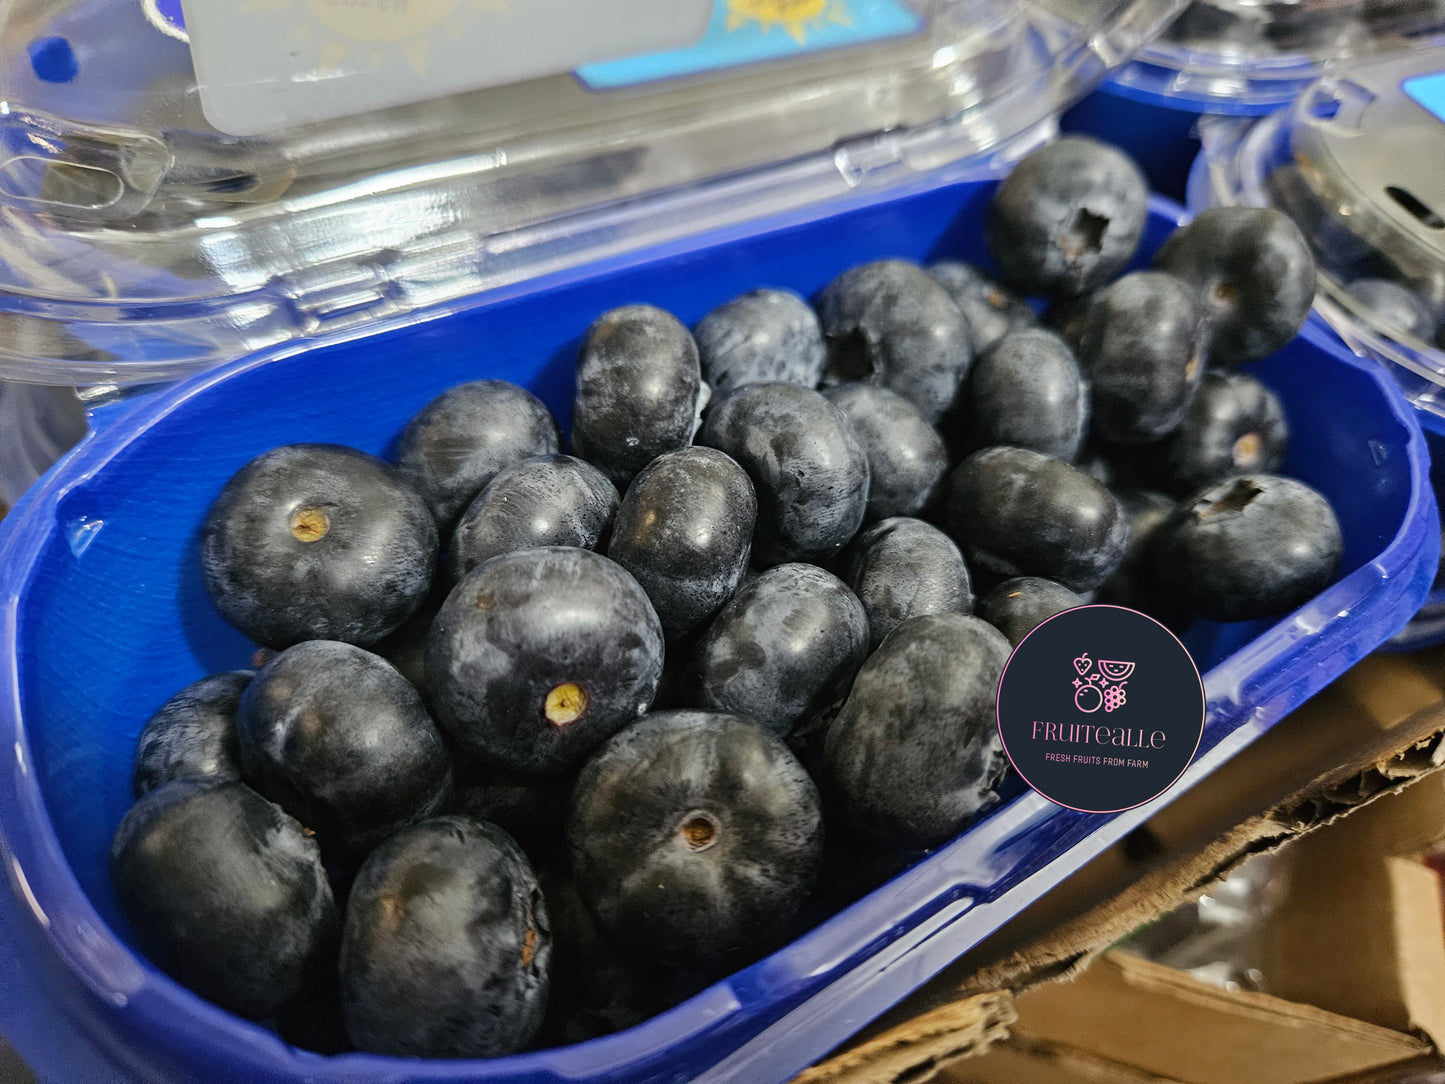 Blueberry - Fresh Coastal Blueberries (Jumbo Size) | 200gm [Super Sweet]